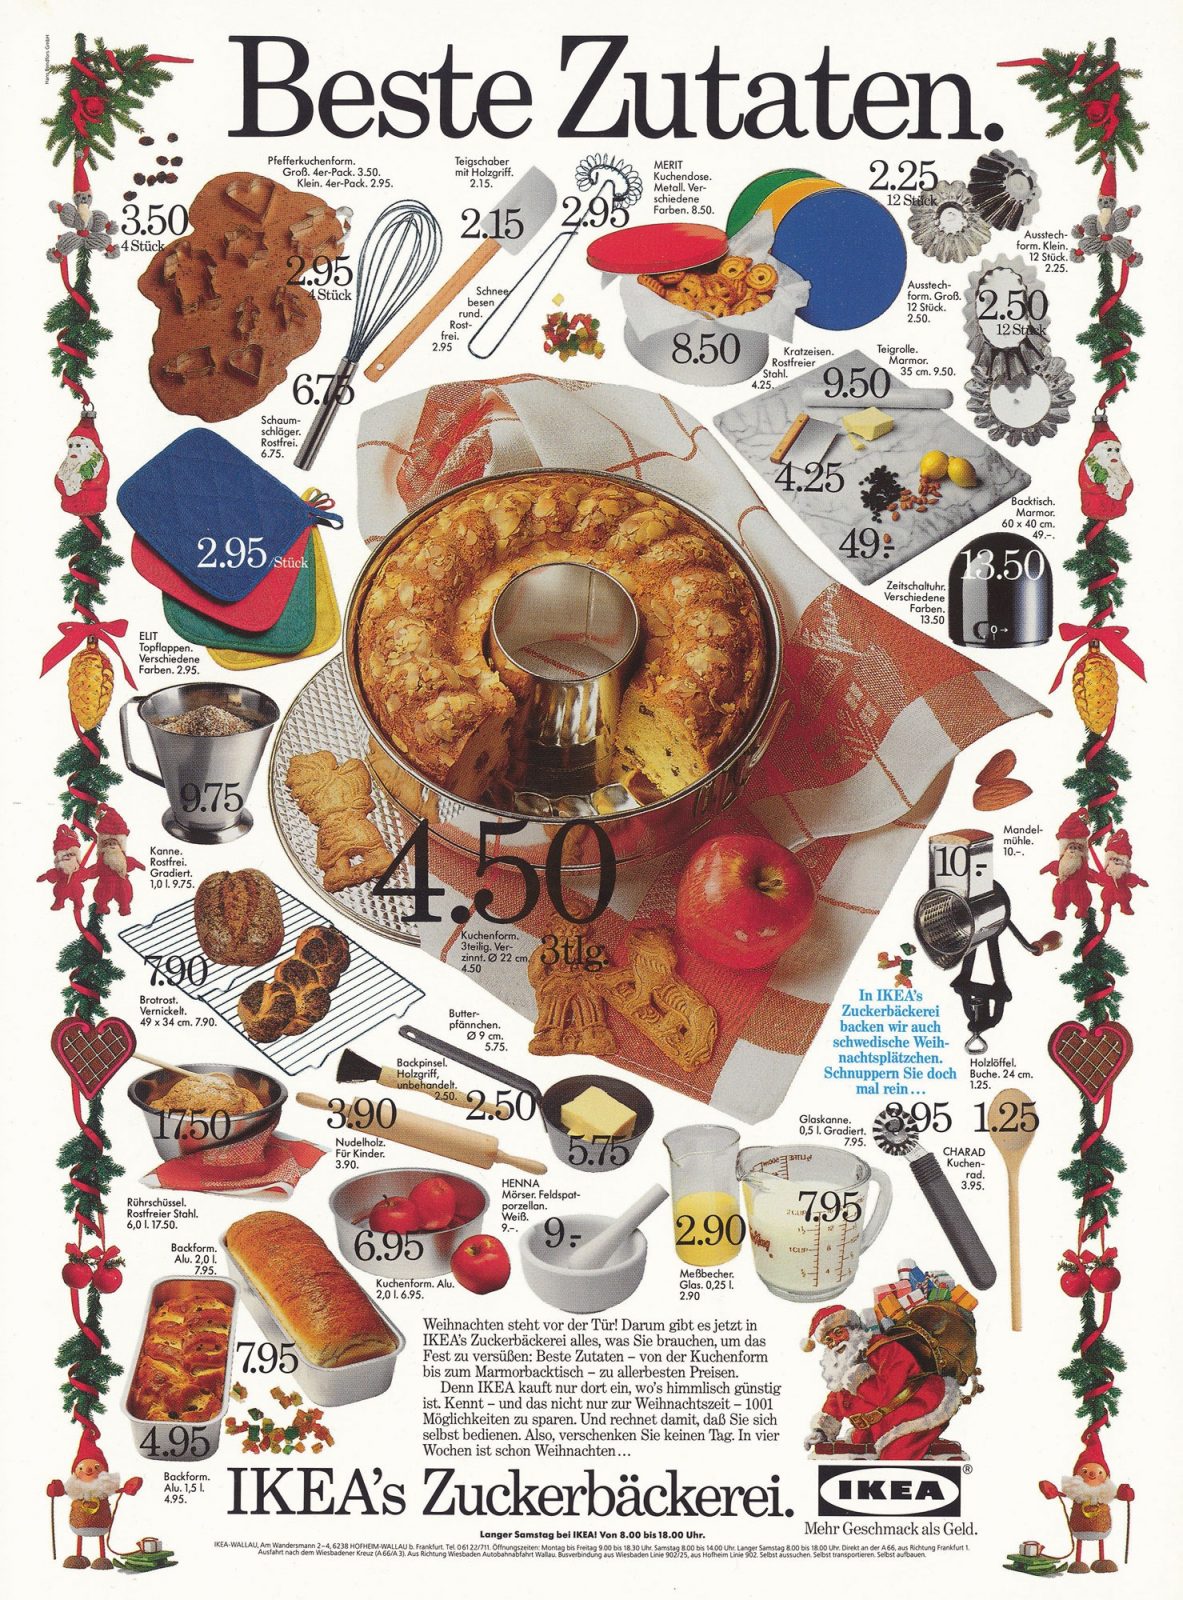 Annons med en mängd småbilder som visar köksredskap och julmat, allting med pris utsatt.